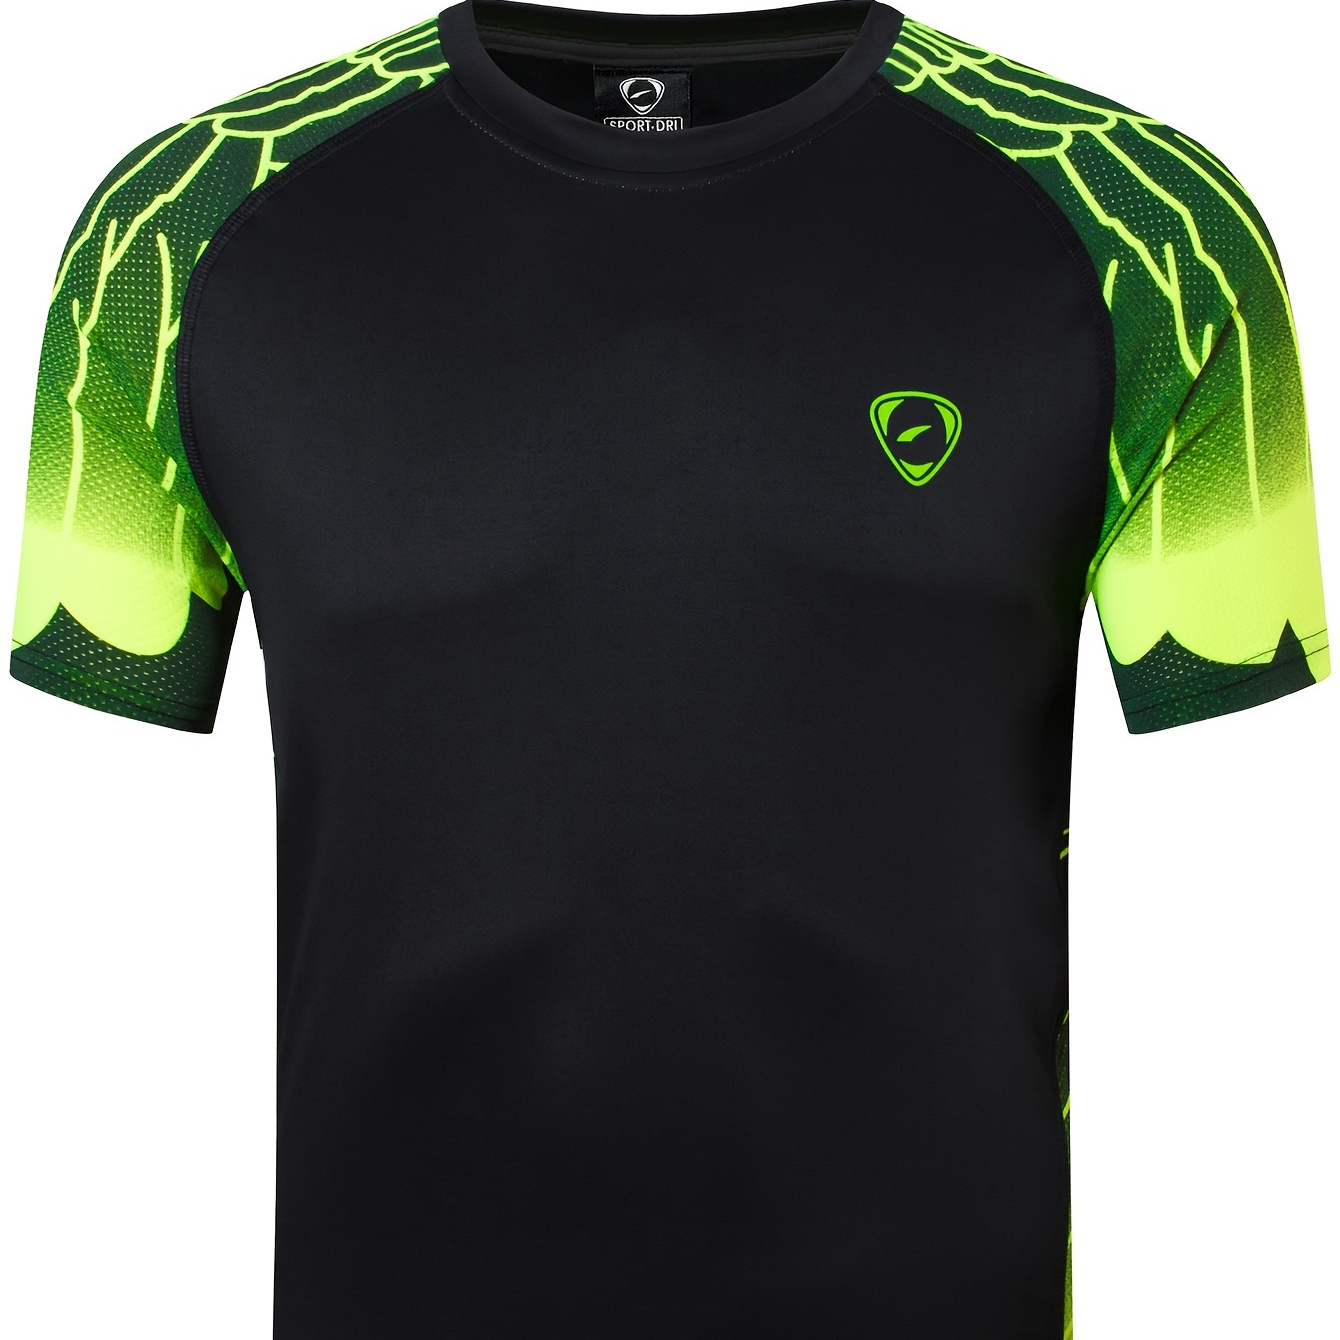 

Men's Sports T-shirt, Short Sleeve Lightweight Quick Drying Fit Tennis Golf Bowling Soccer Jersey